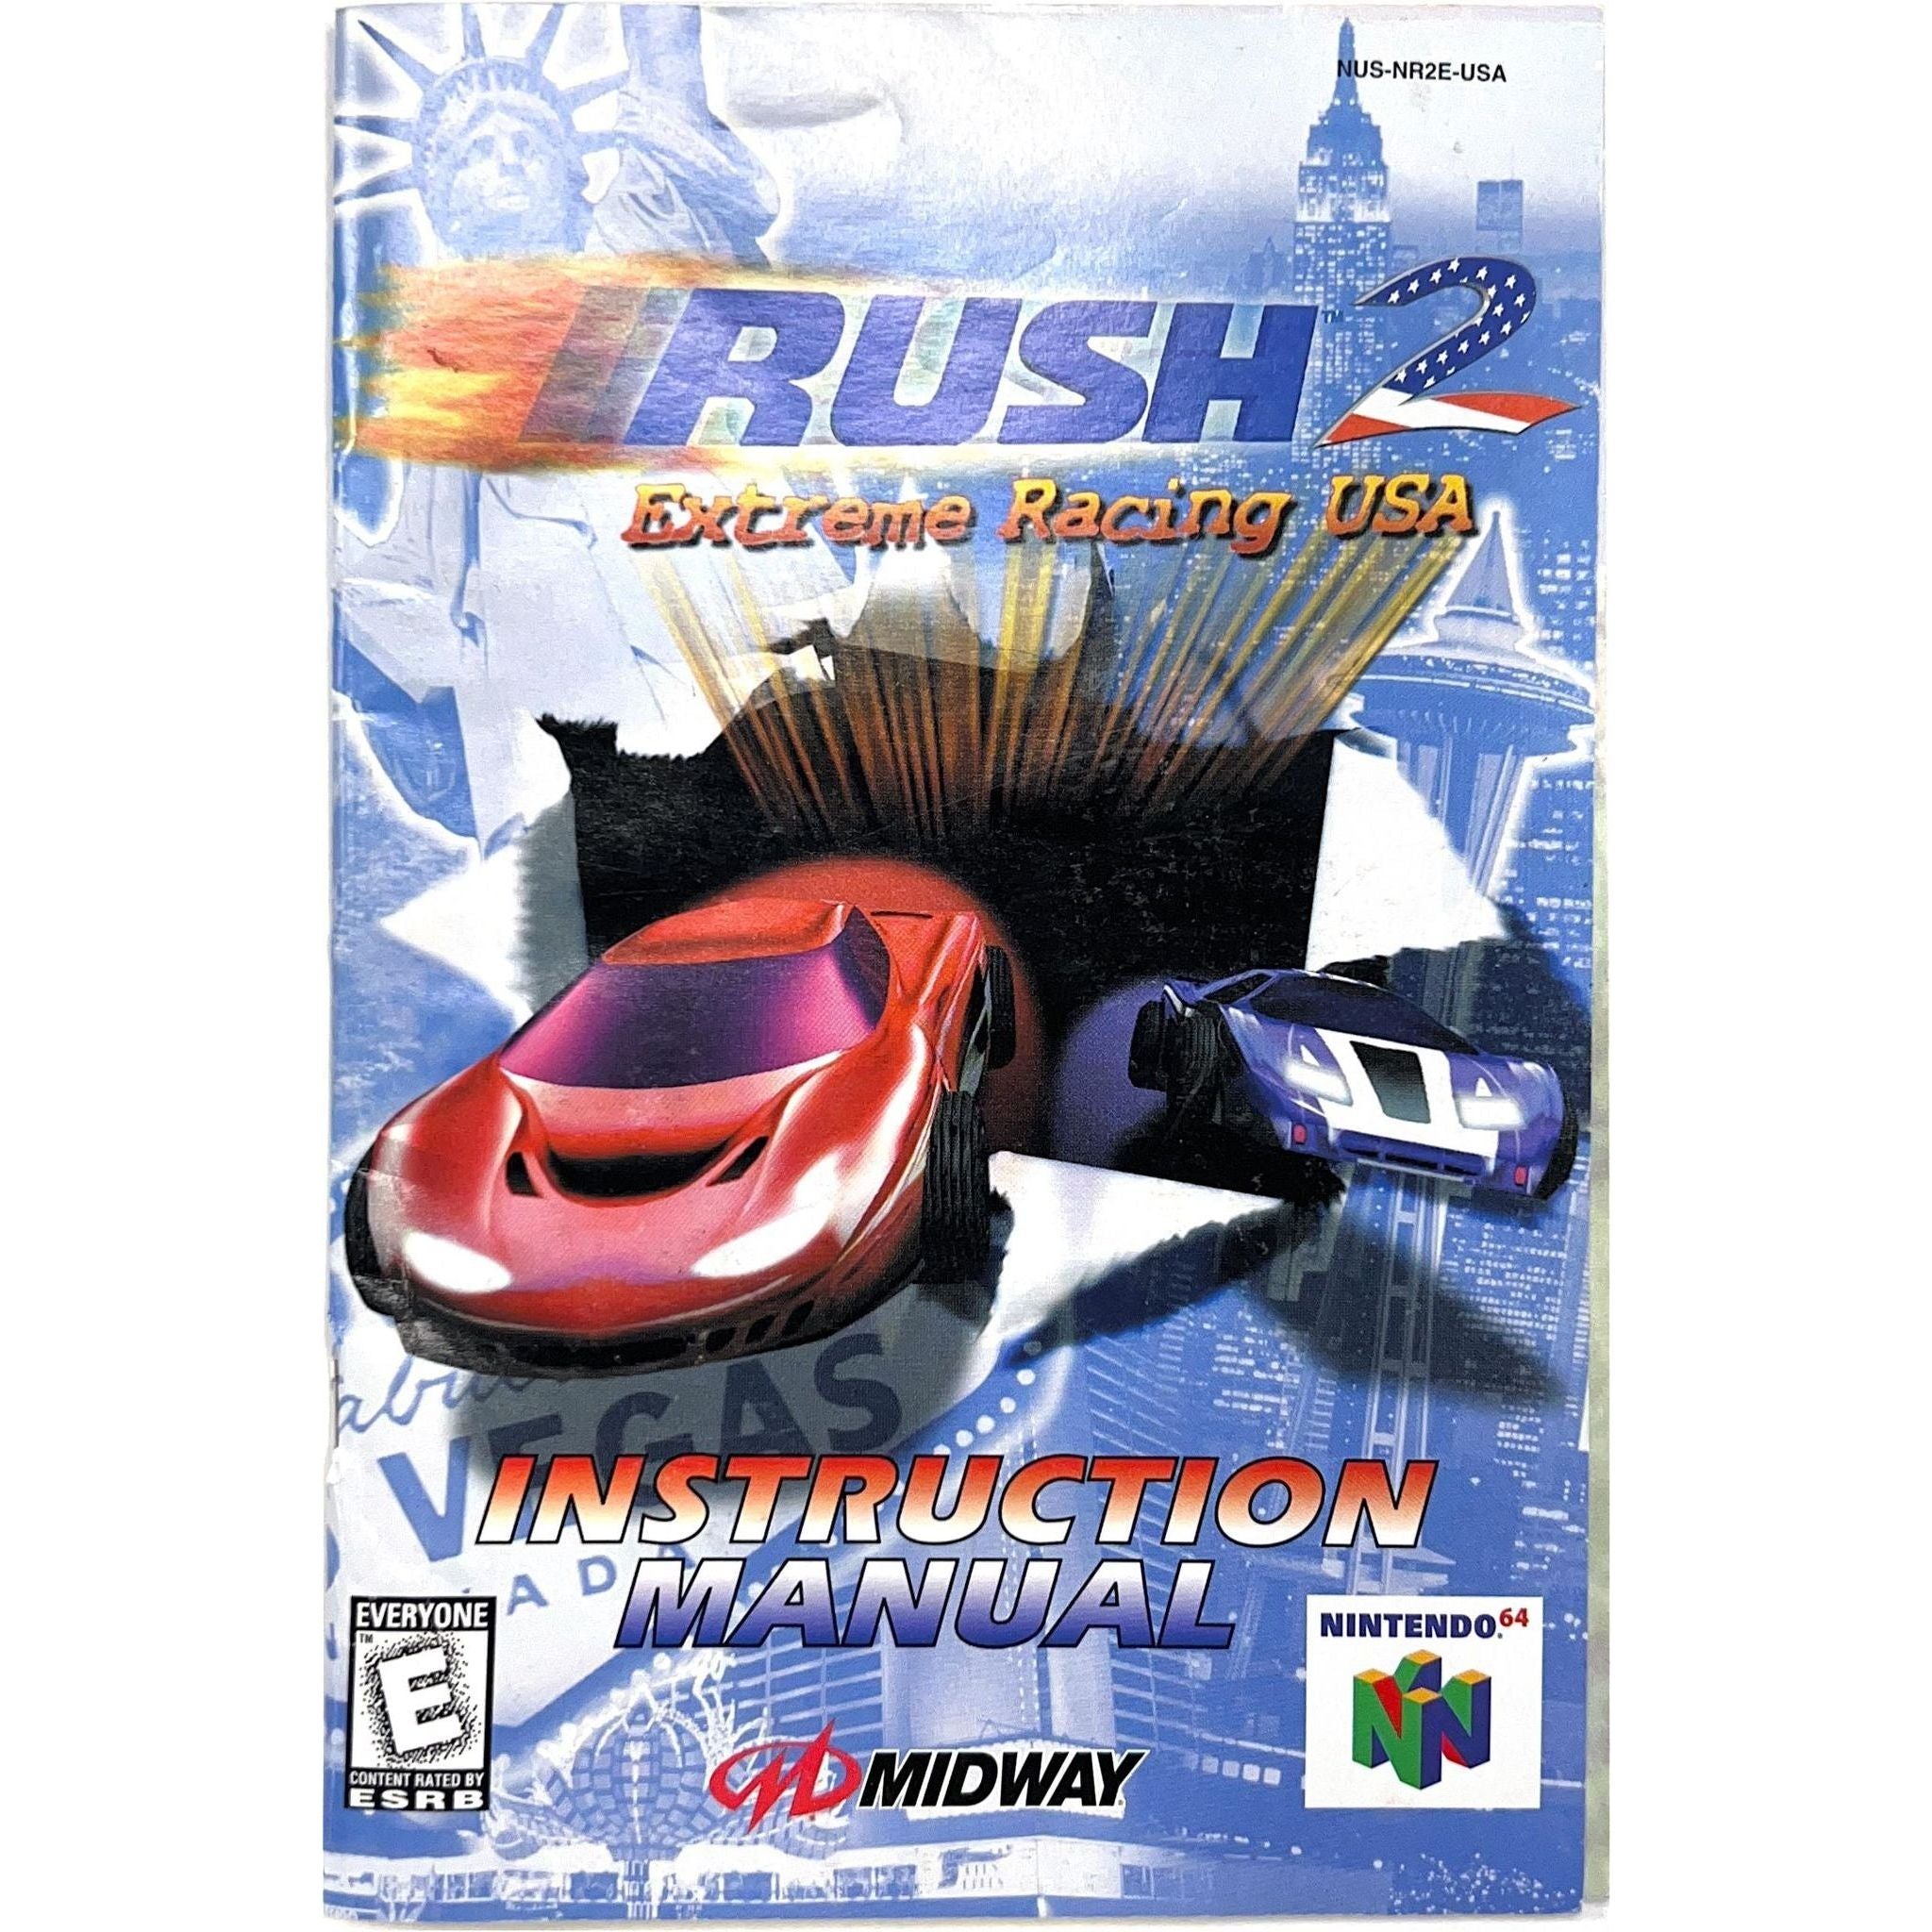 N64 - RUSH 2 Extreme Racing USA (Manual)